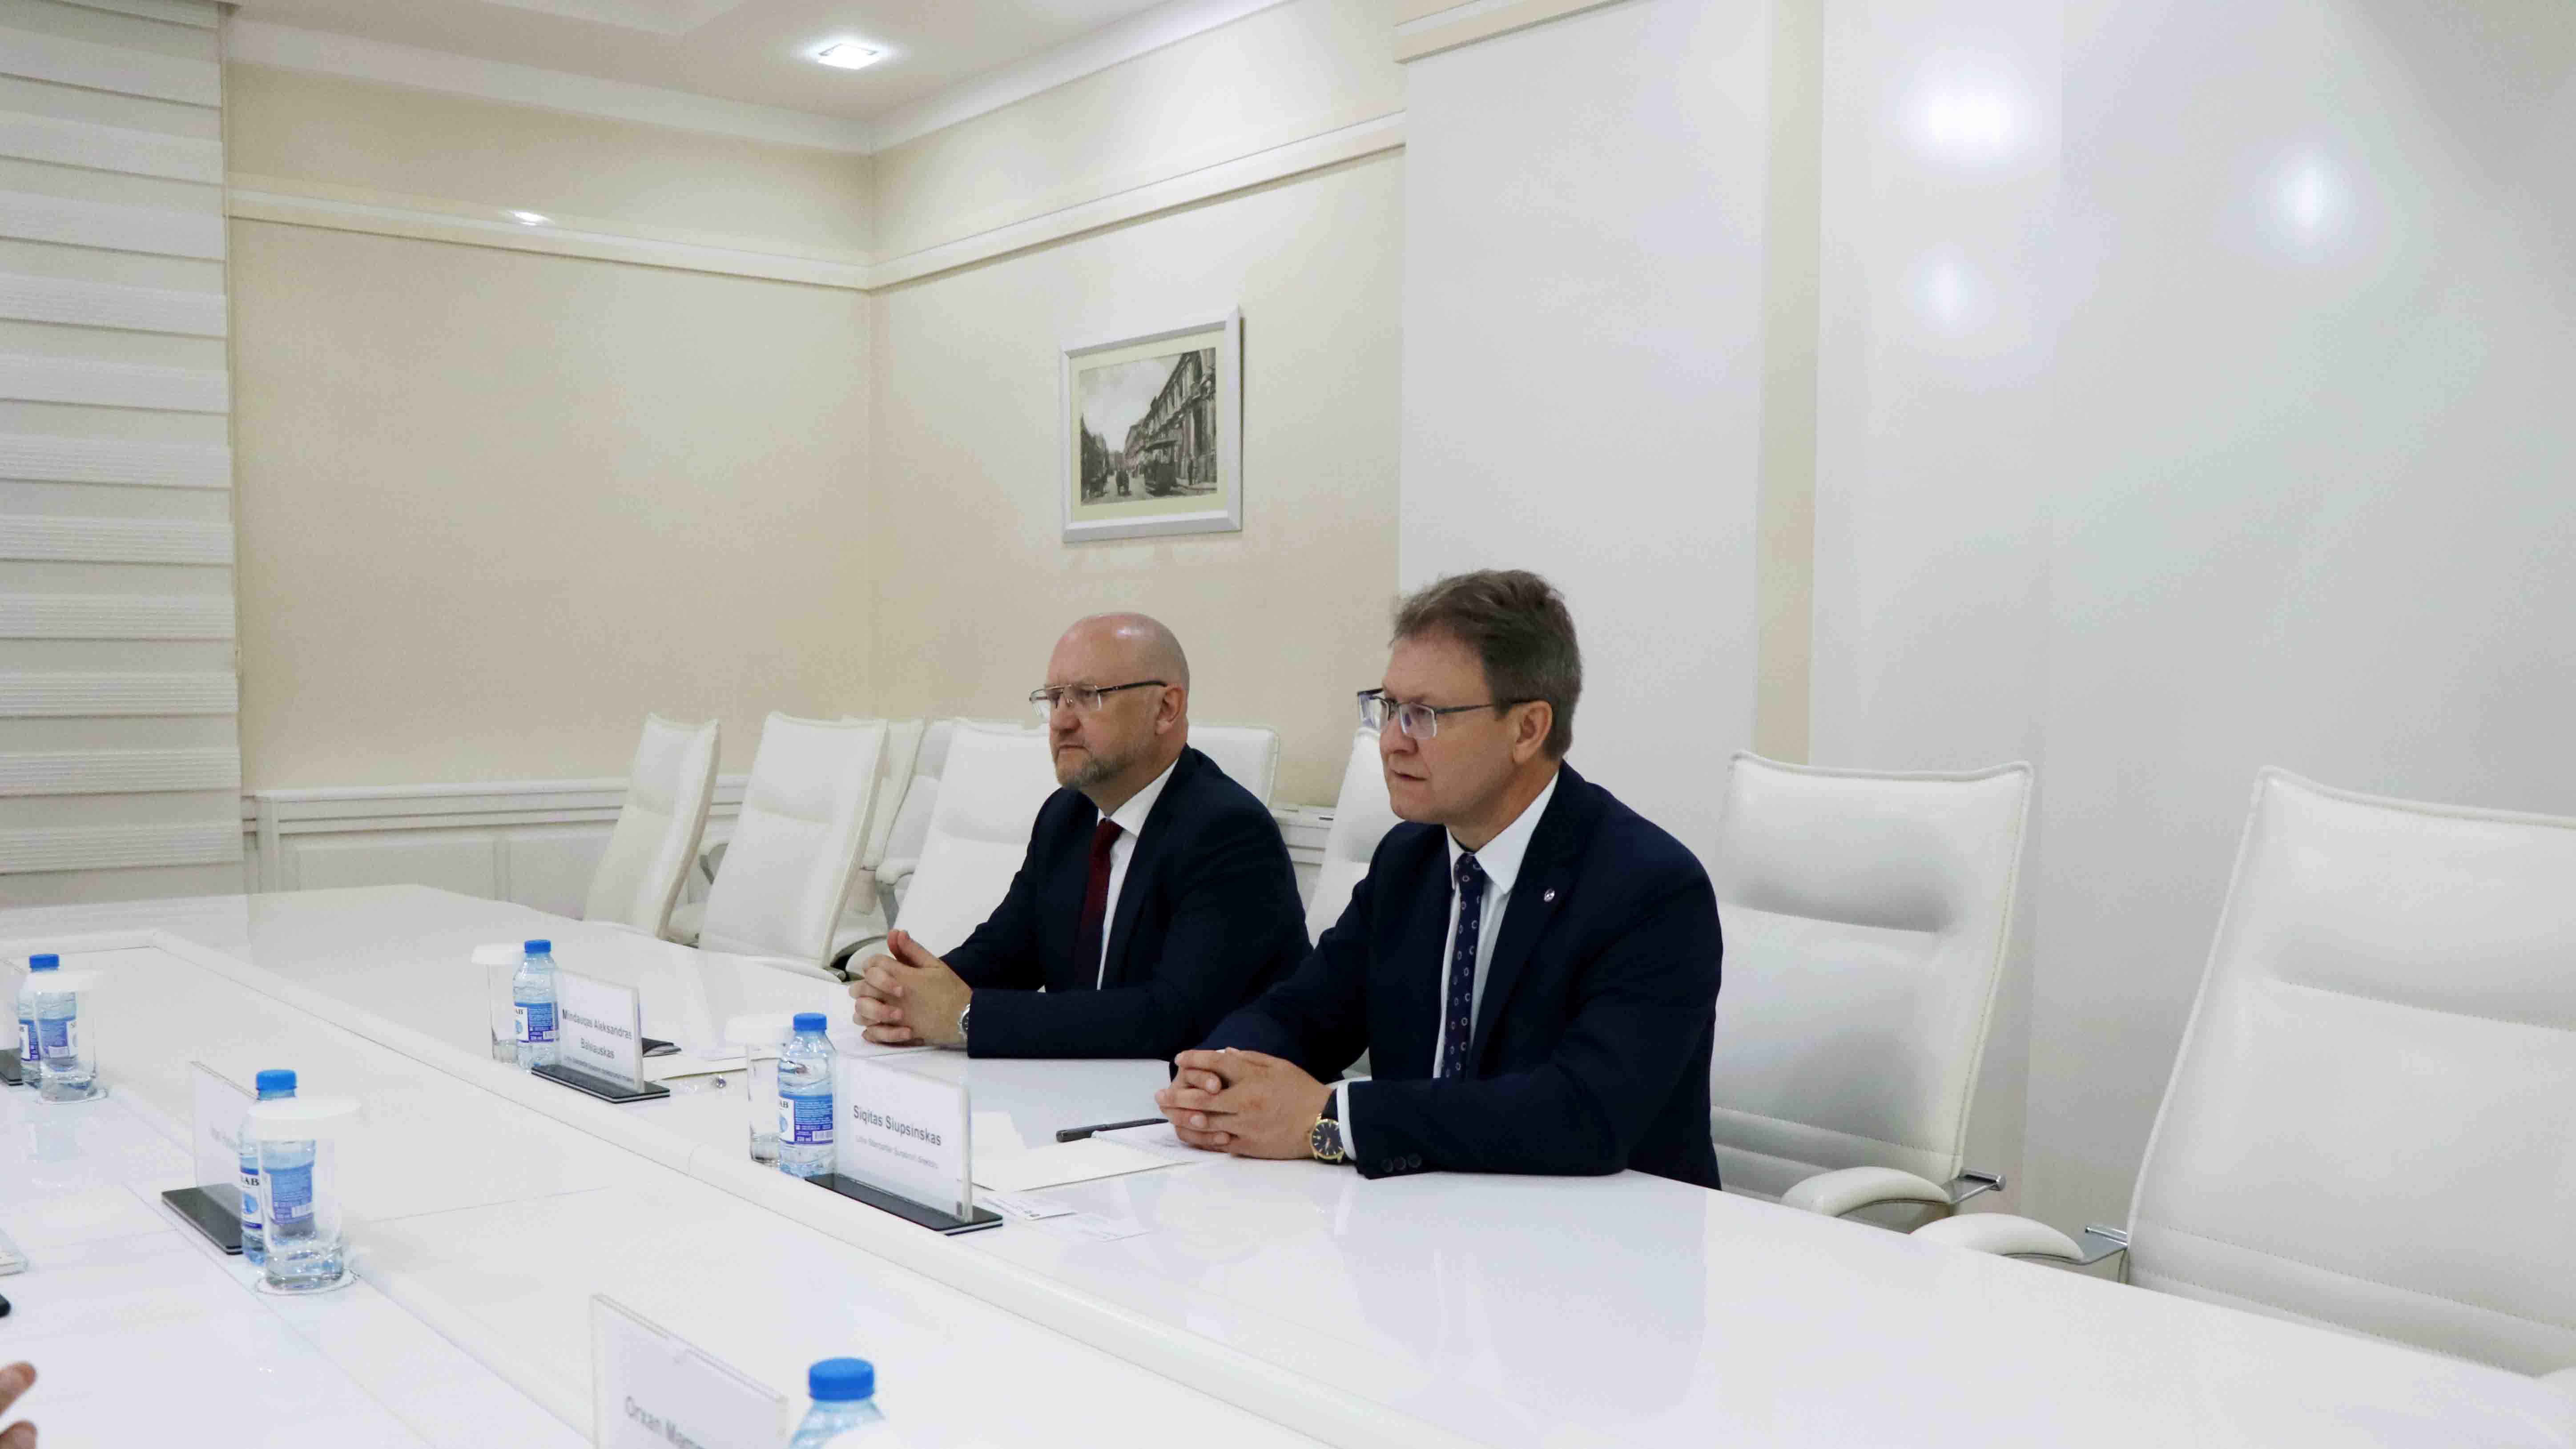 Azərbaycan Standartlaşdırma İnstitutu ilə Litva Standartlar Şurası arasında Anlaşma Memorandumu imzalanıb